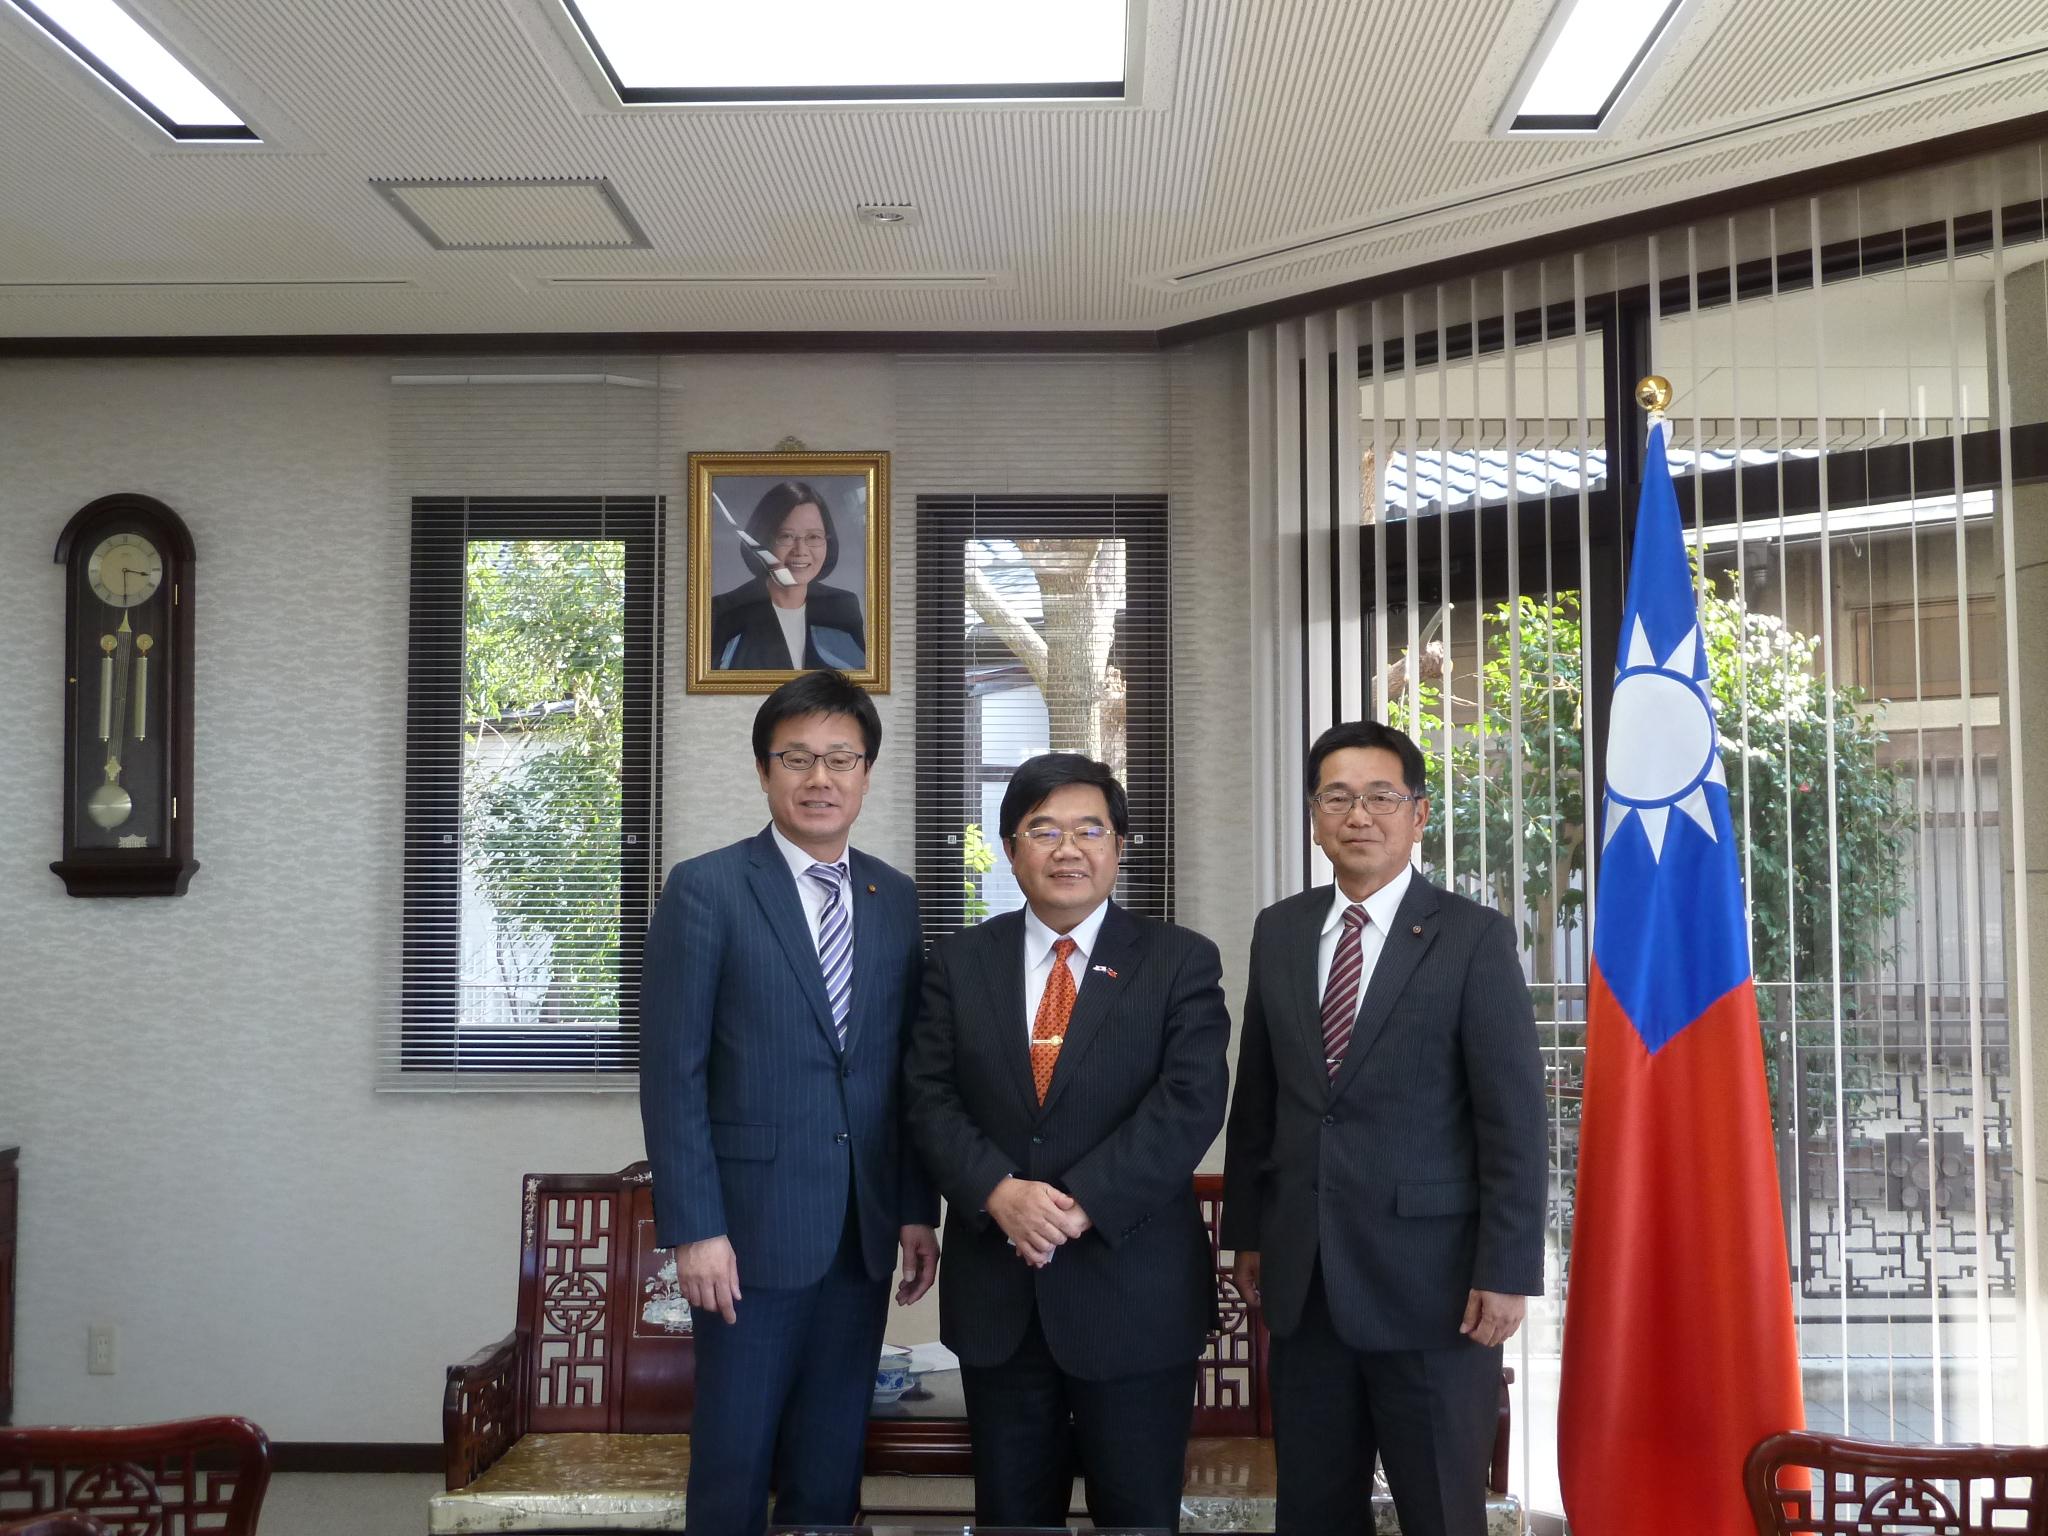 熊本市議會中華民國友好議員聯盟會長原口亮志(右)、副會長高本一臣(左)